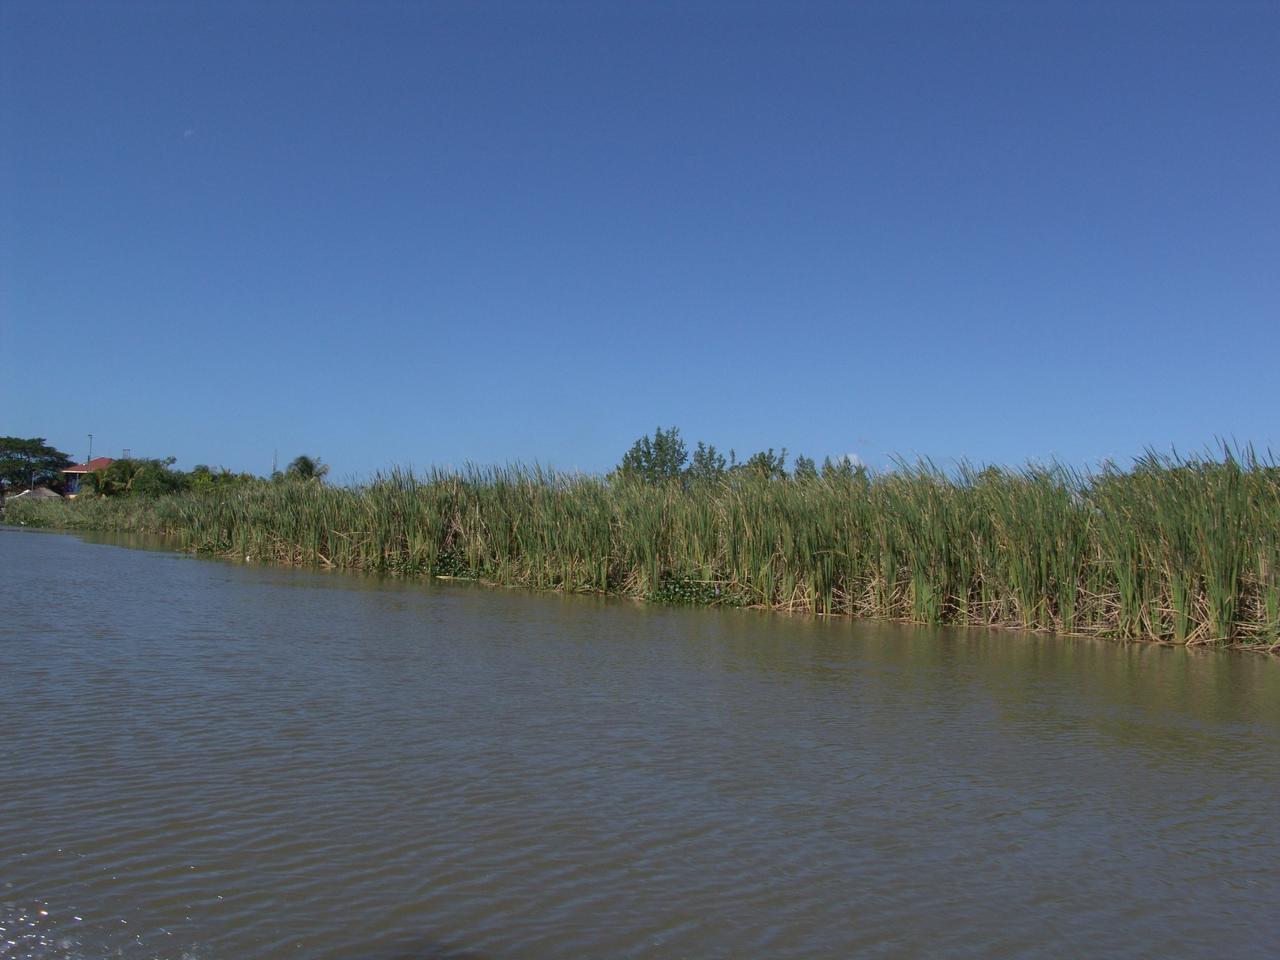 Zuckerrohr am Uferrand des Black River